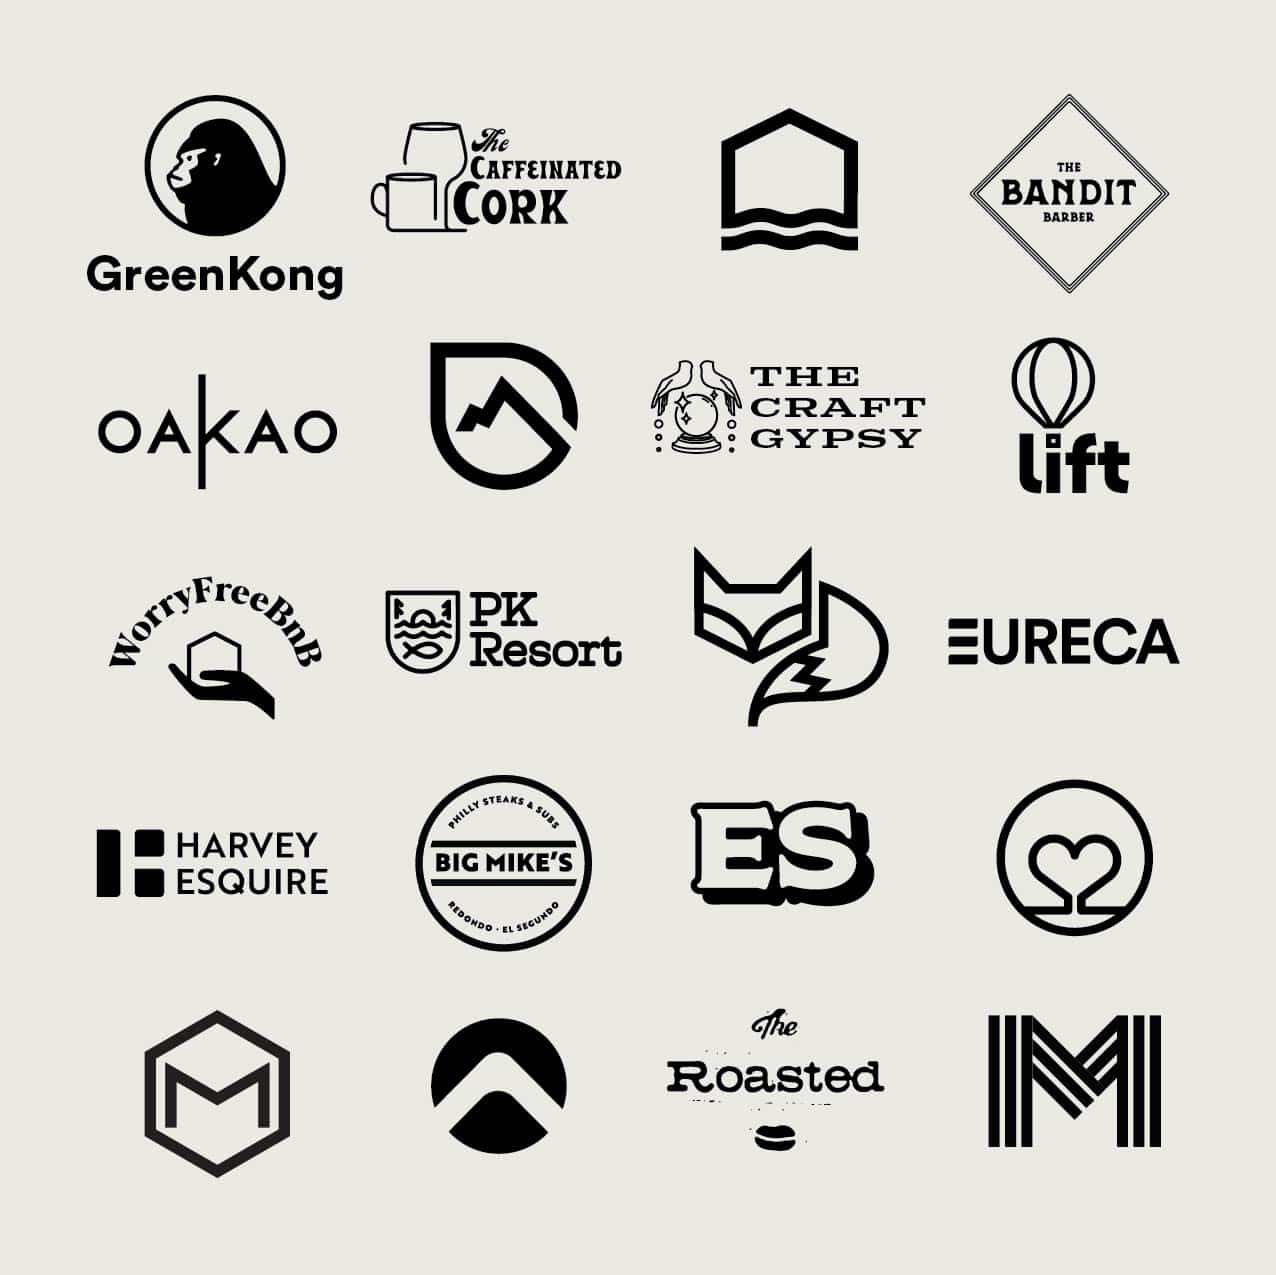 Jungimmobilienunternehmer sucht identität im logo! | Logo design contest |  99designs